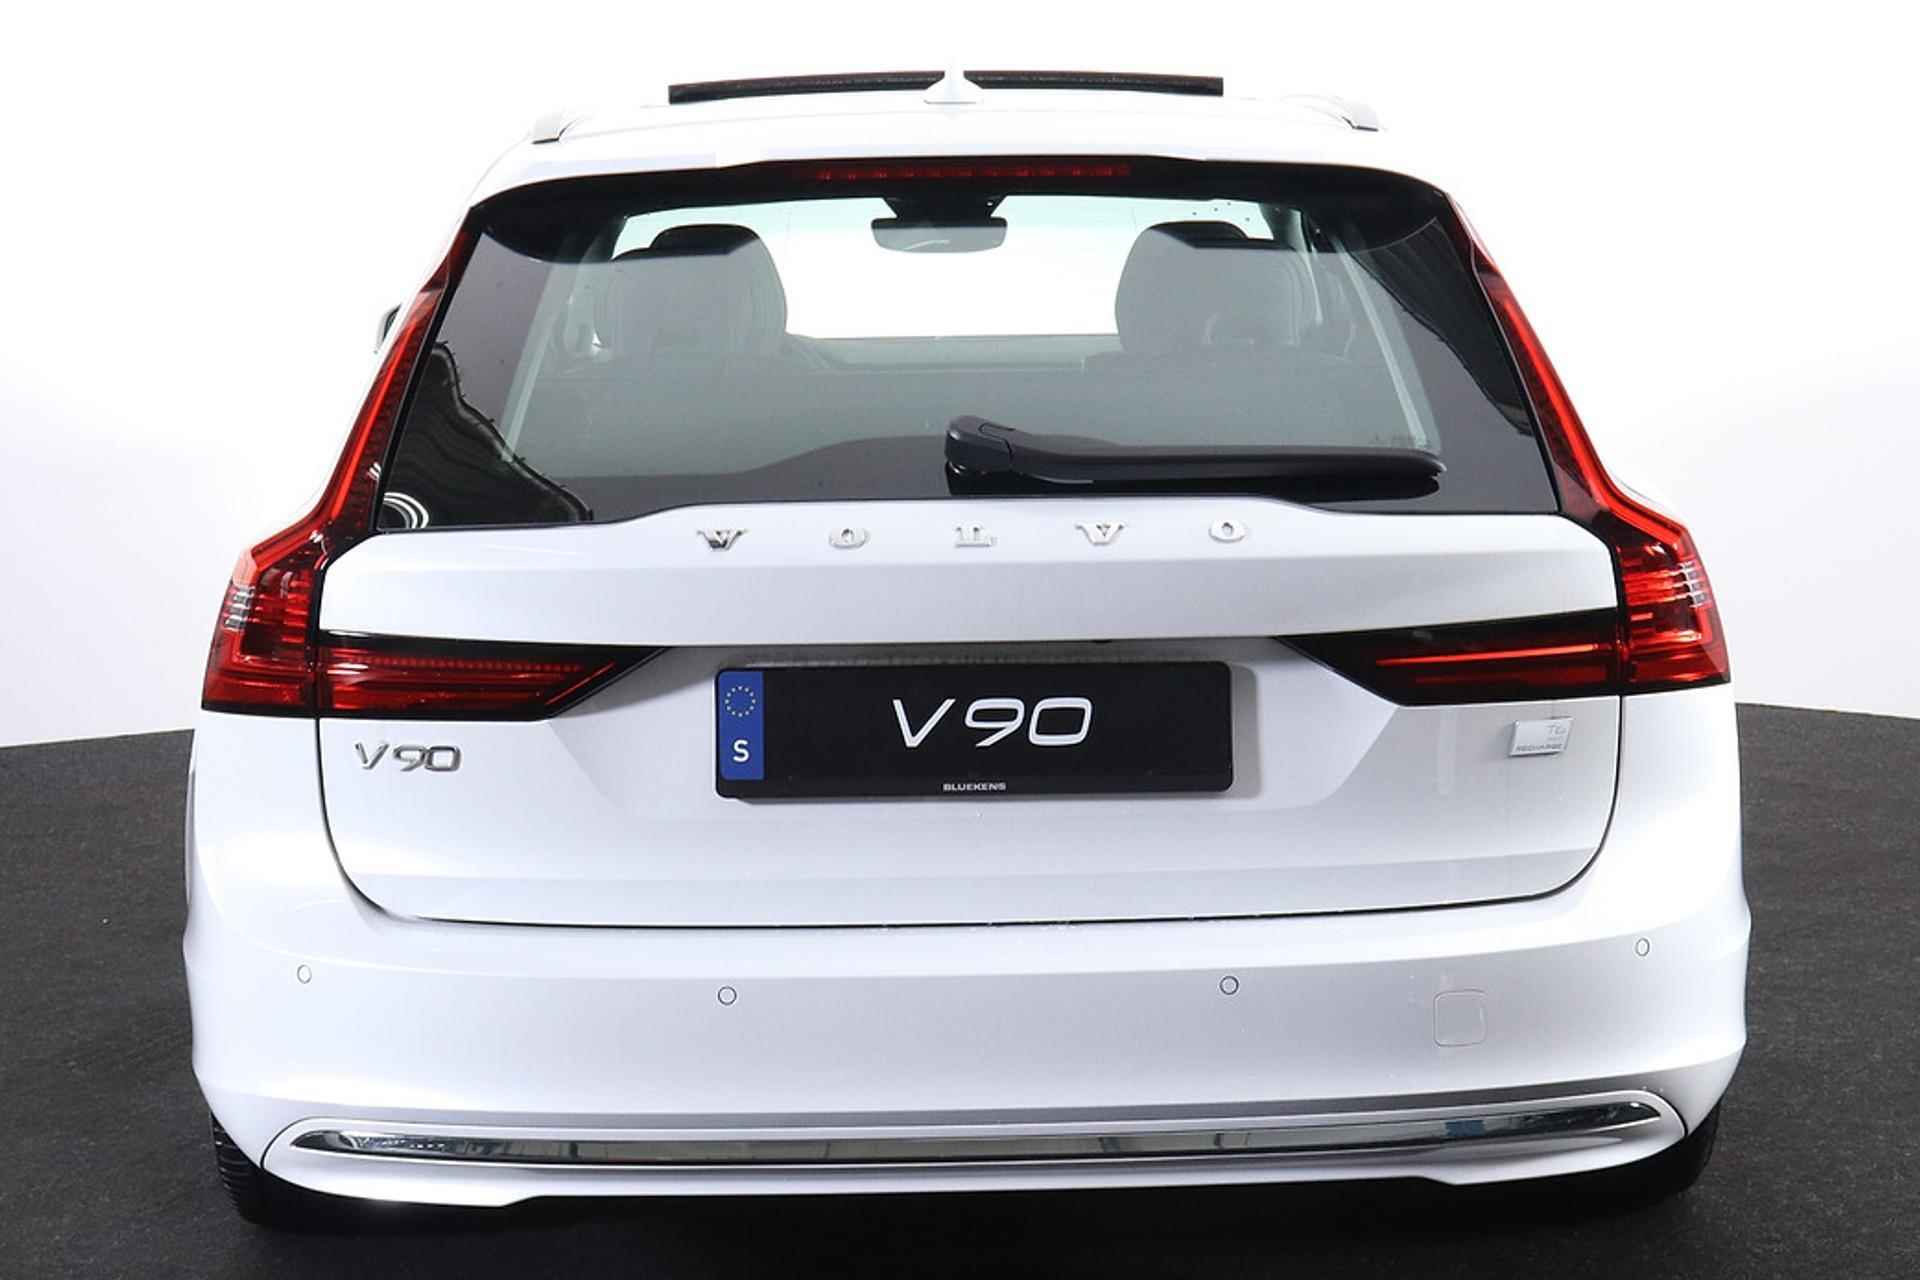 Volvo V90 T6 AWD Recharge Inscription - Panorama/schuifdak - IntelliSafe Assist & Surround - Harman/Kardon audio - Adaptieve LED koplampen - Parkeercamera achter - Verwarmde voorstoelen & stuur - Parkeersensoren voor & achter - Elektr. bedienb. voorstoelen met geheugen - Standkachel - 19' LMV - 4/33